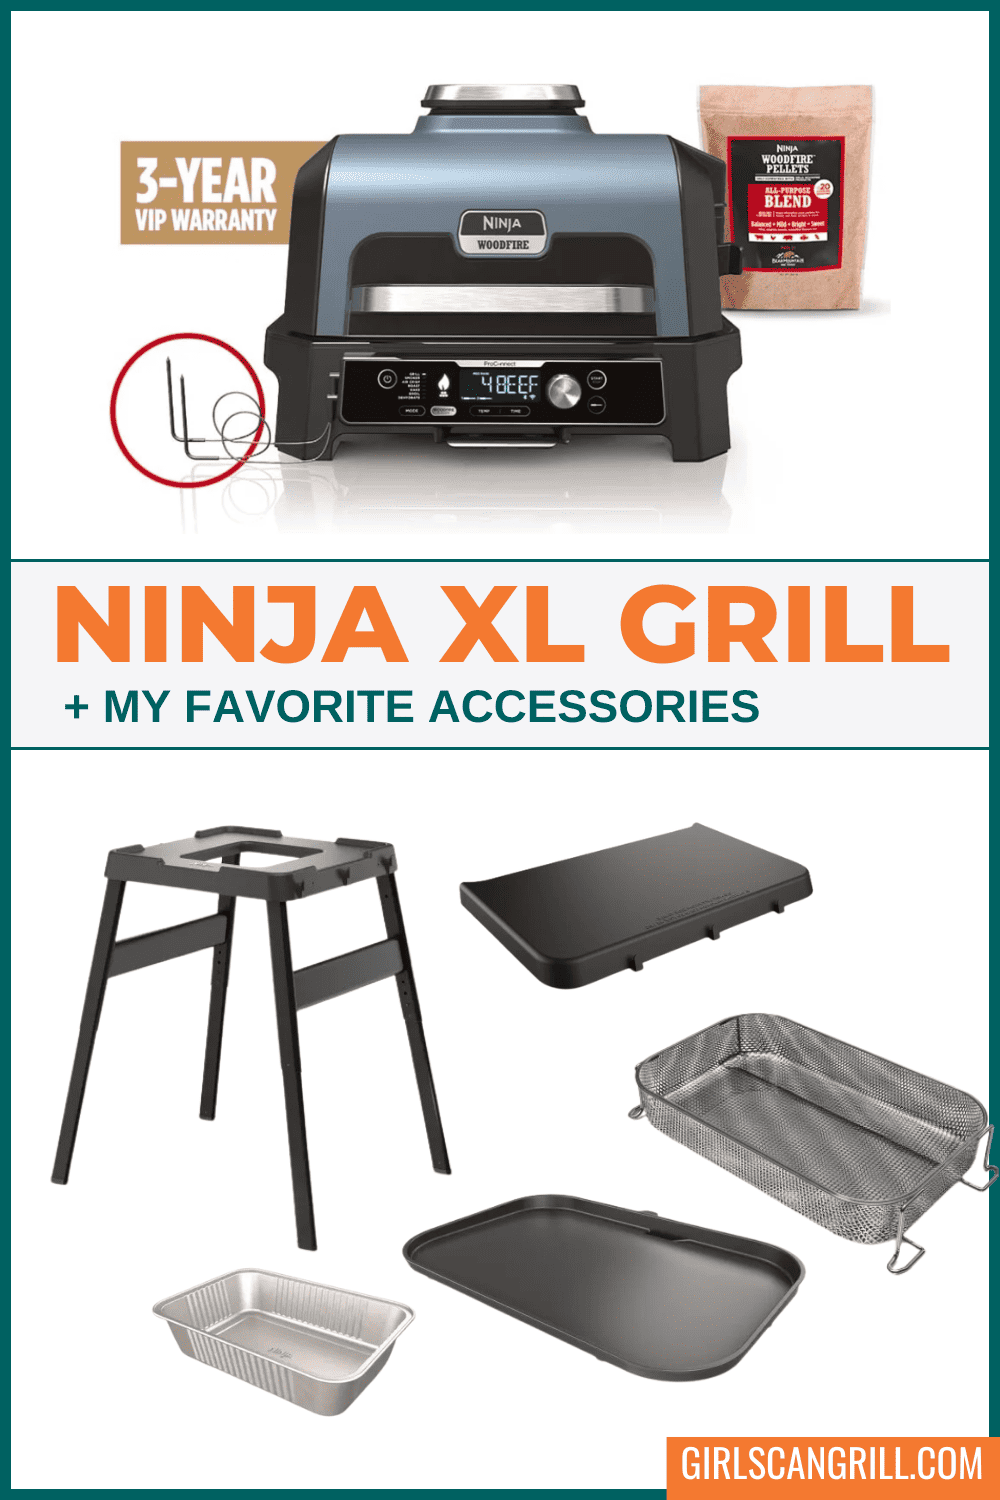 Ninja XL grill and accessories.